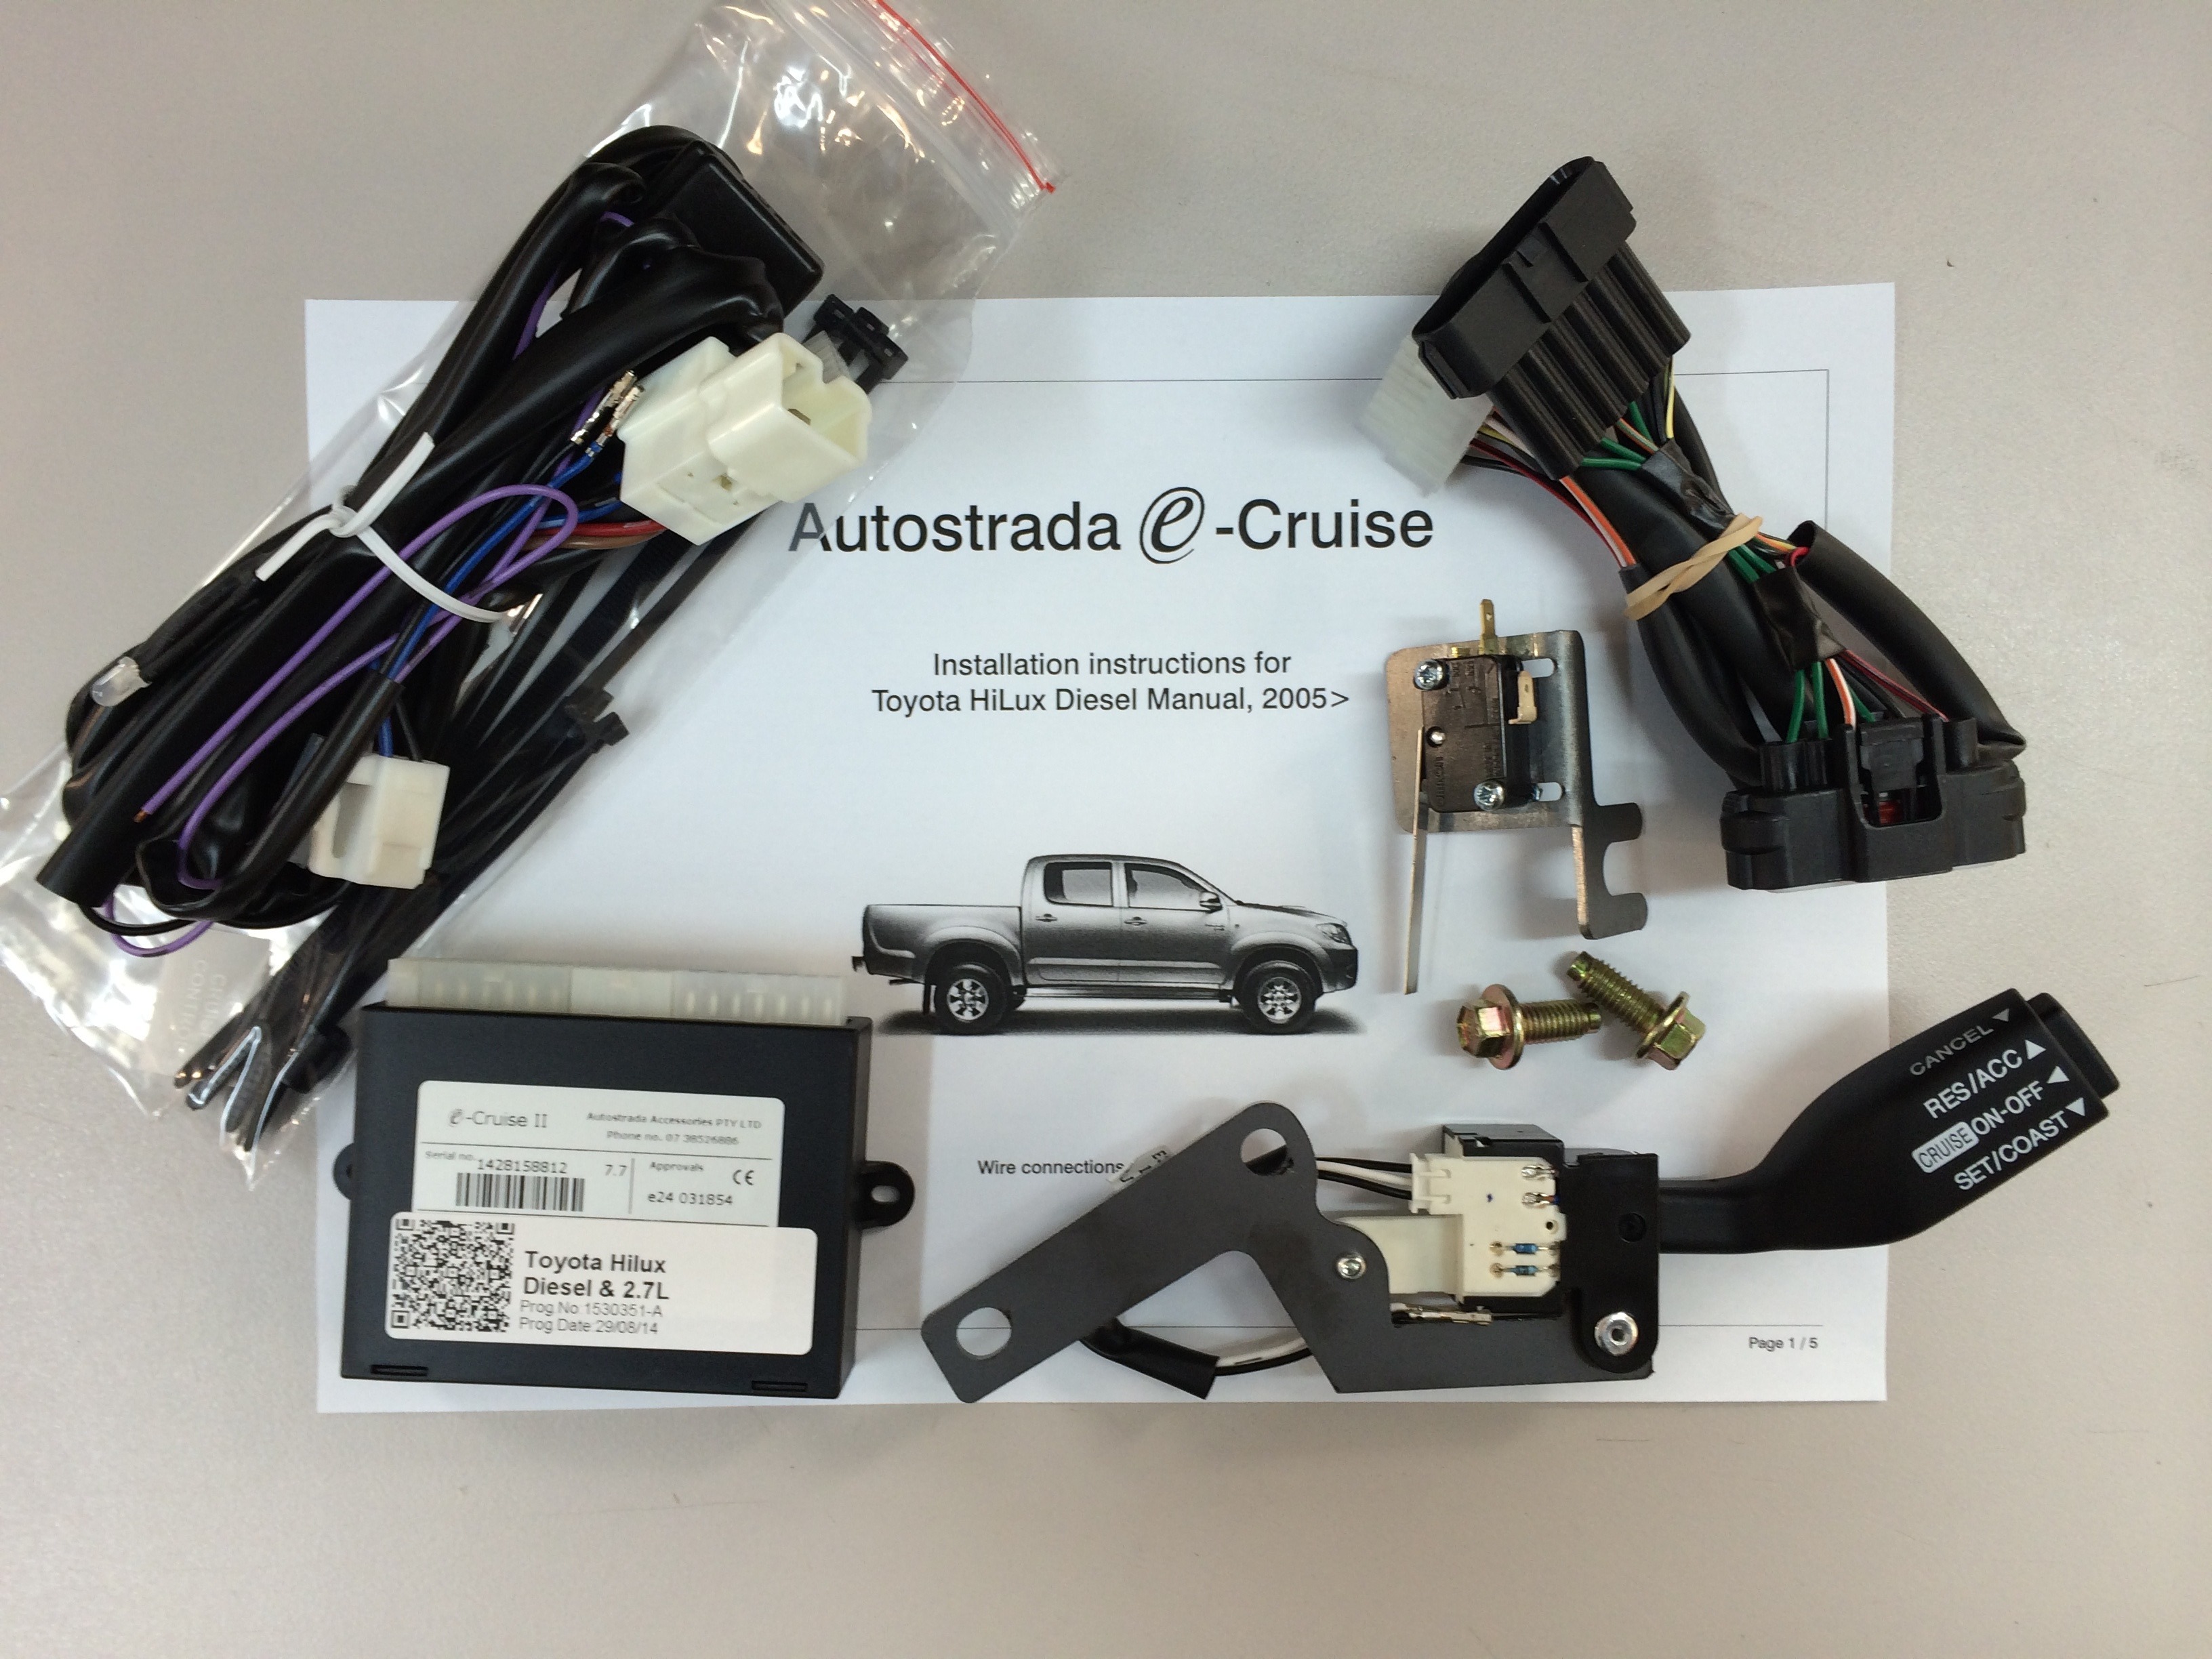 model specific e-cruise control kit